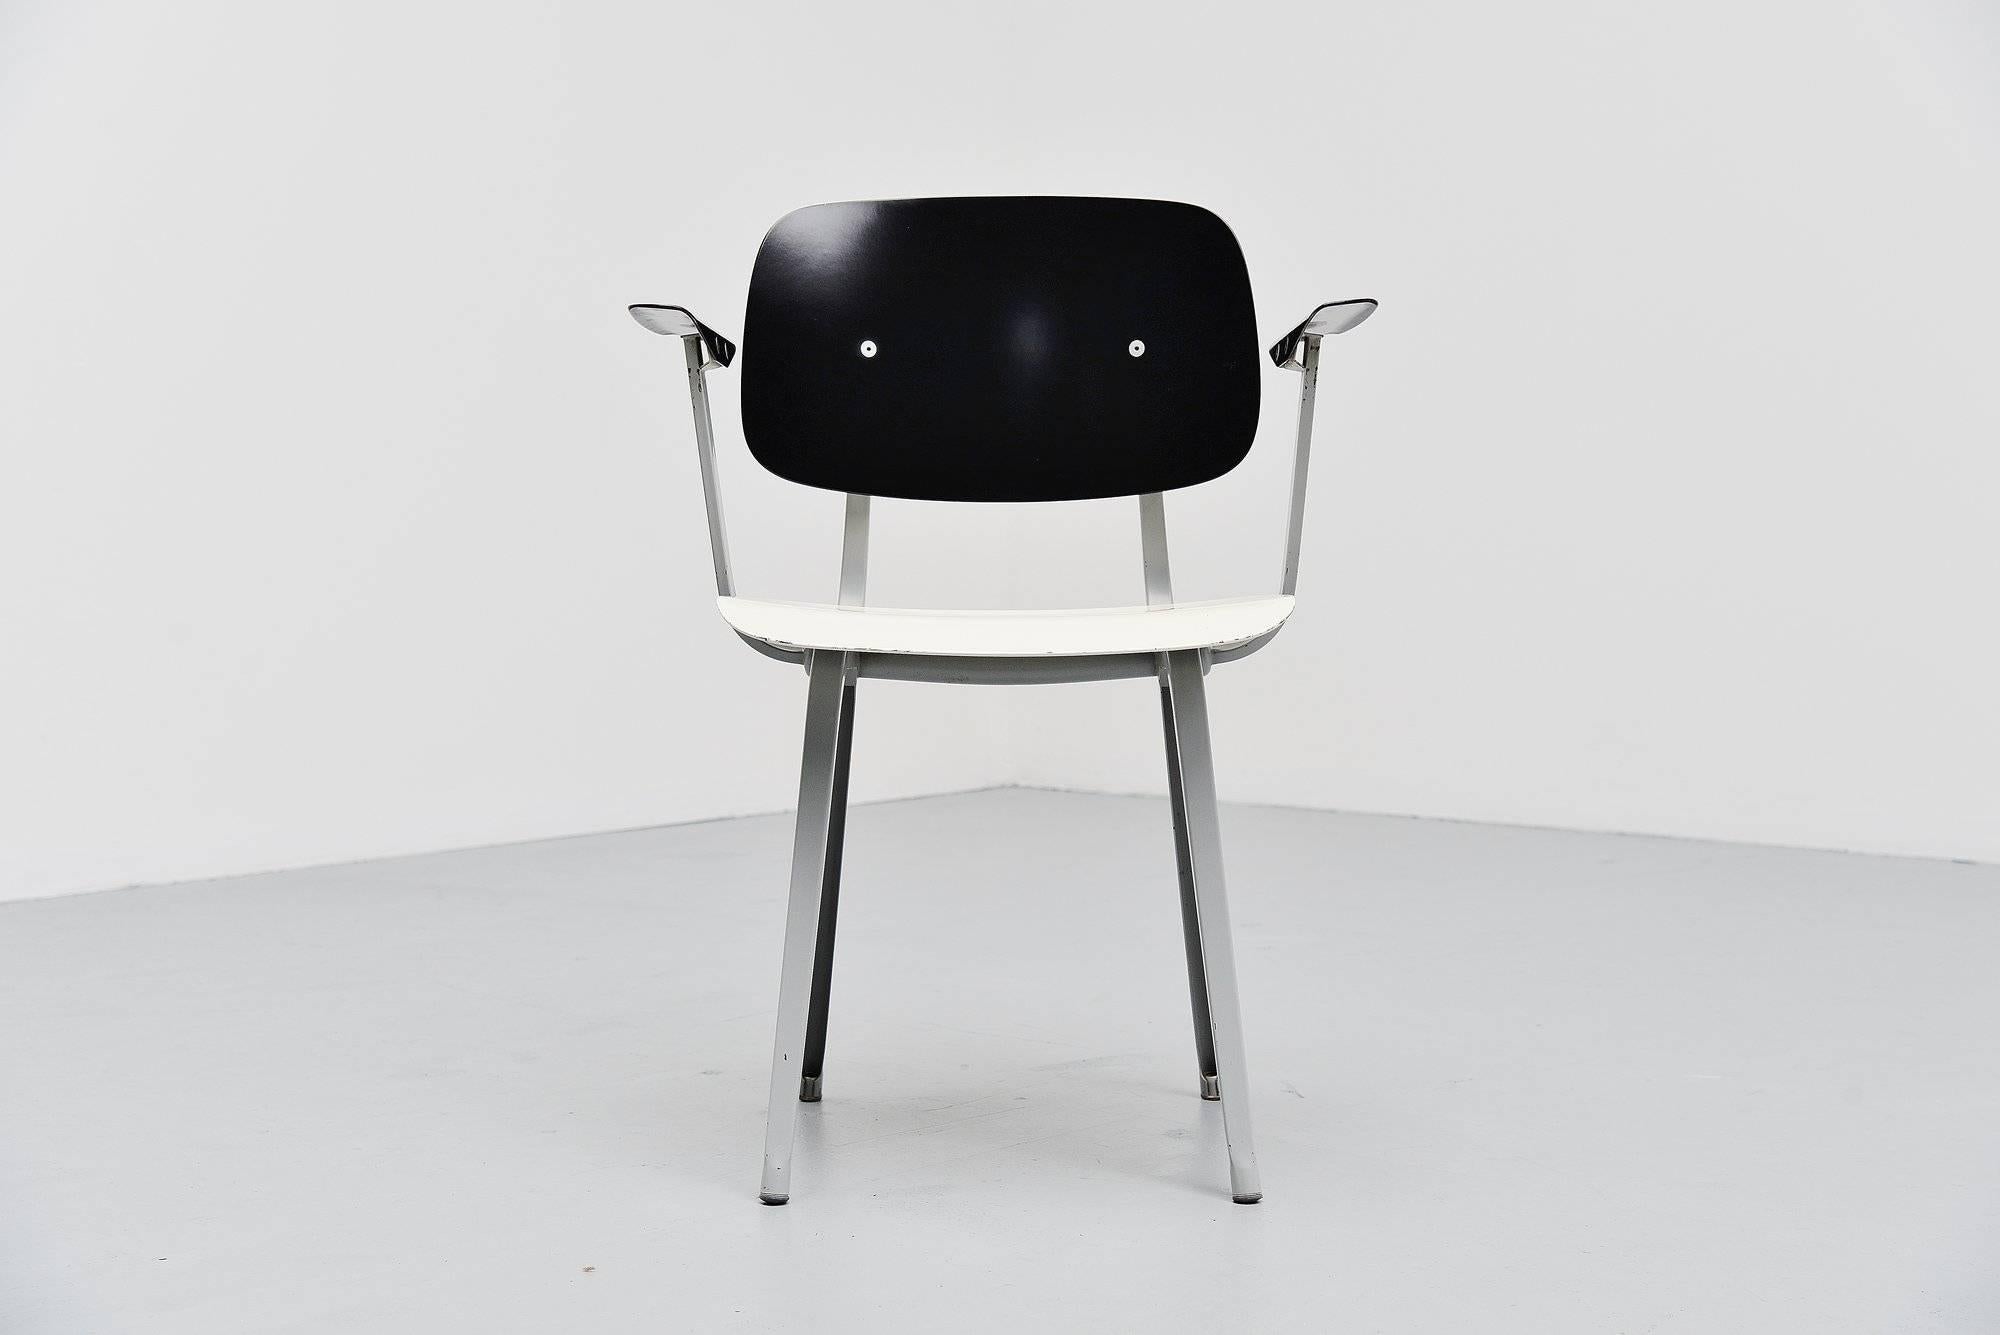 Rare fauteuil Revolt de première production conçu par Friso Kramer pour Ahrend de Cirkel, Hollande, 1953. Cette chaise a été fabriquée pour le TH Delft qui a chargé Friso Kramer et &New de décorer le nouvel intérieur. Ces célèbres chaises TH Delft